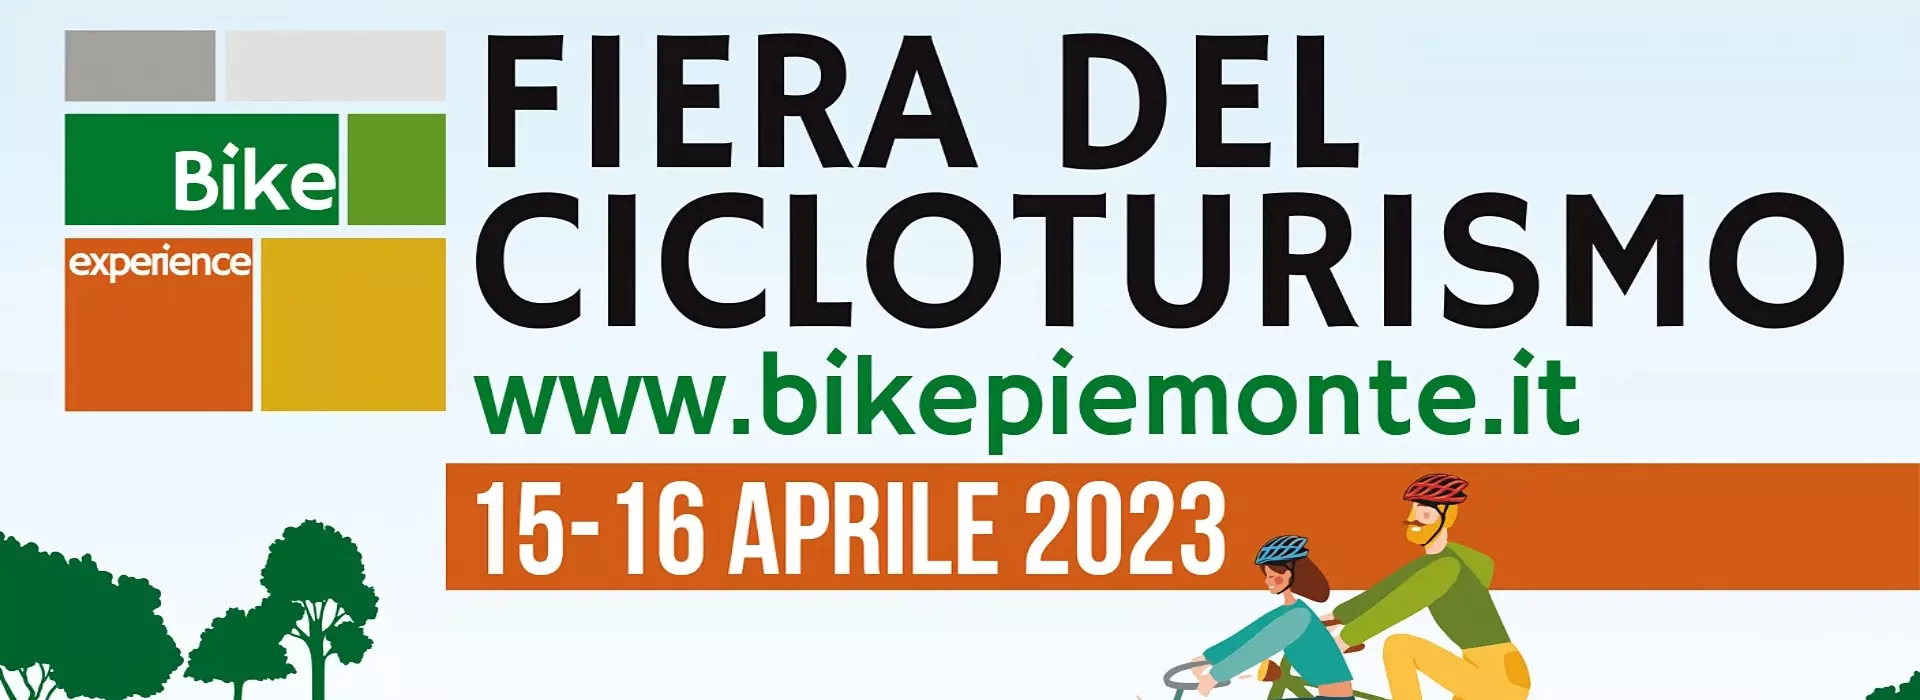 Copertina articolo della fiera del cicloturismo di Boeris Bikes Torino dal 15 al 16 aprile 2023. scopri tutto al link www.bikepiemonte.it Bike experience